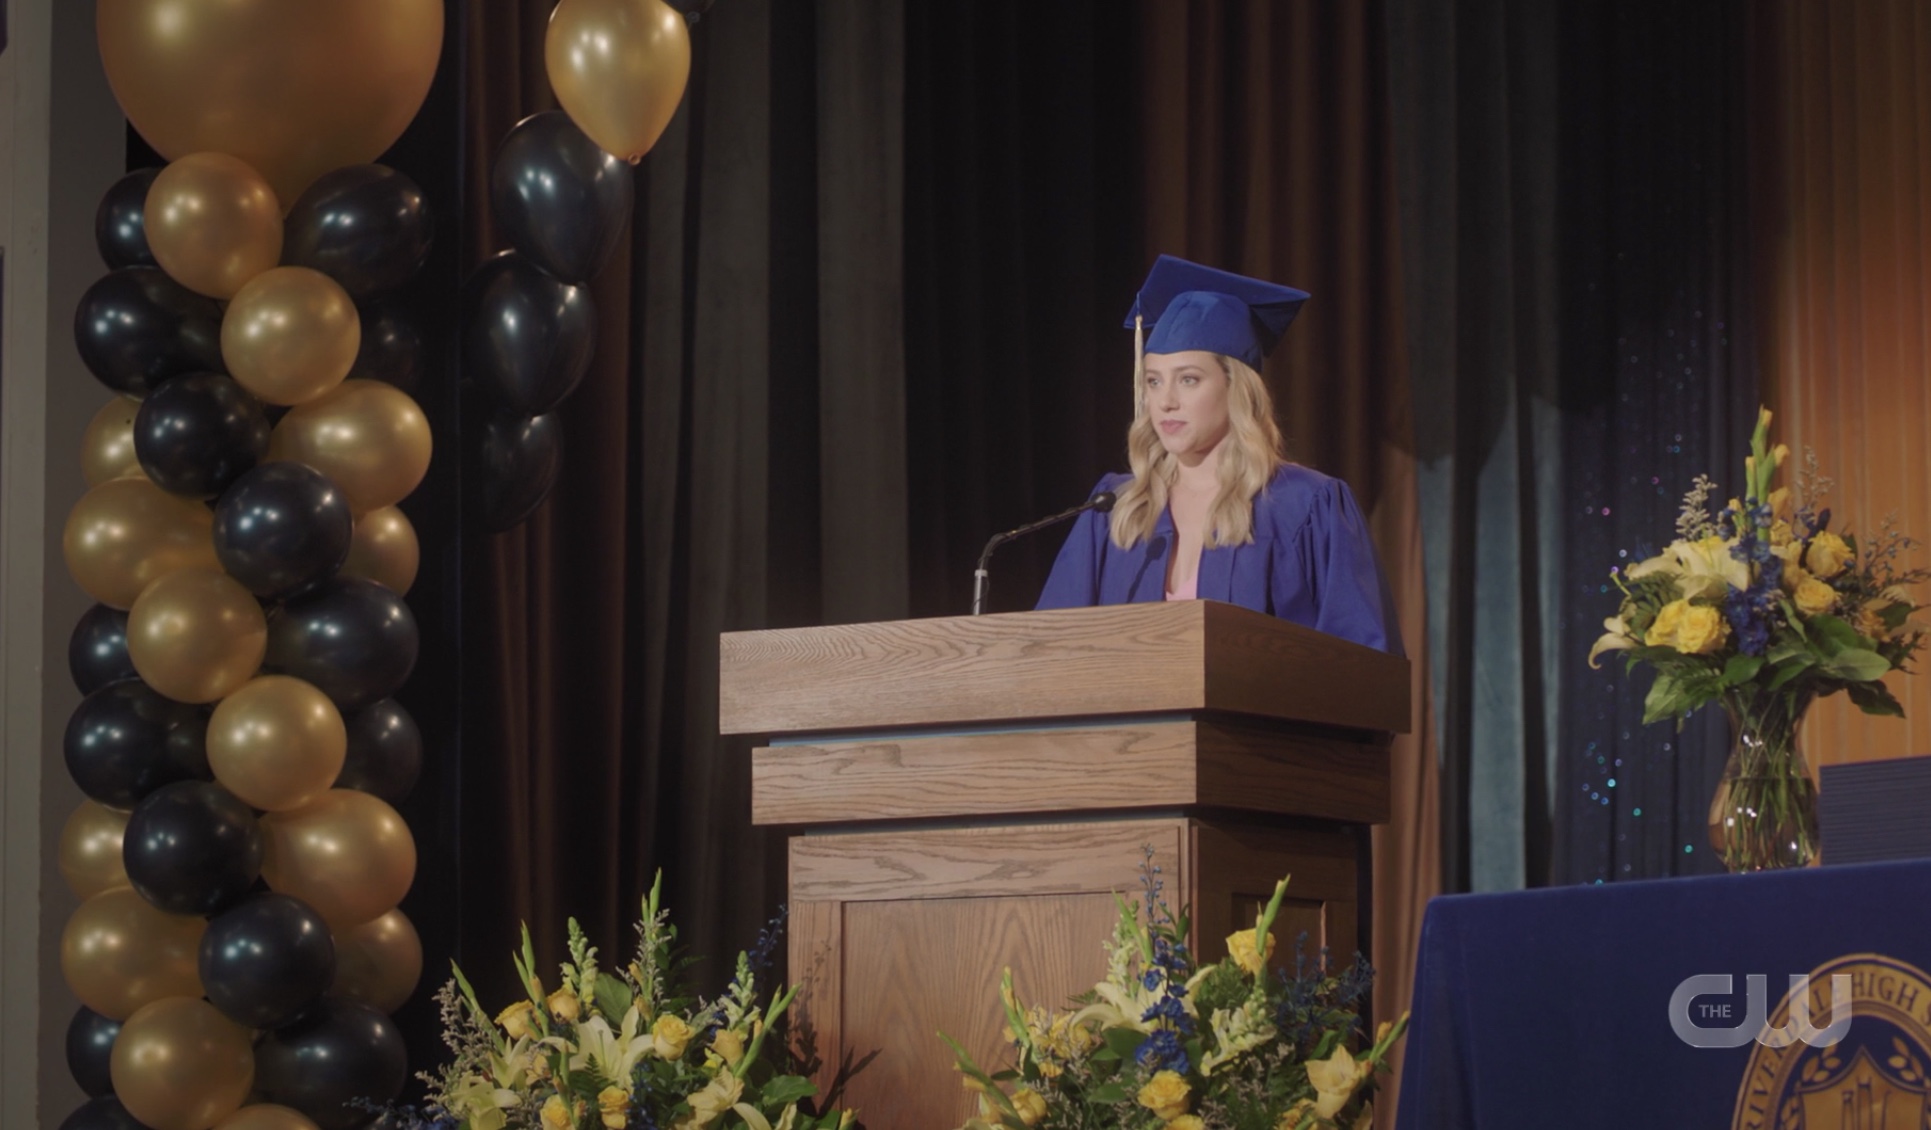 Betty's Riverdale High valedictorian speech